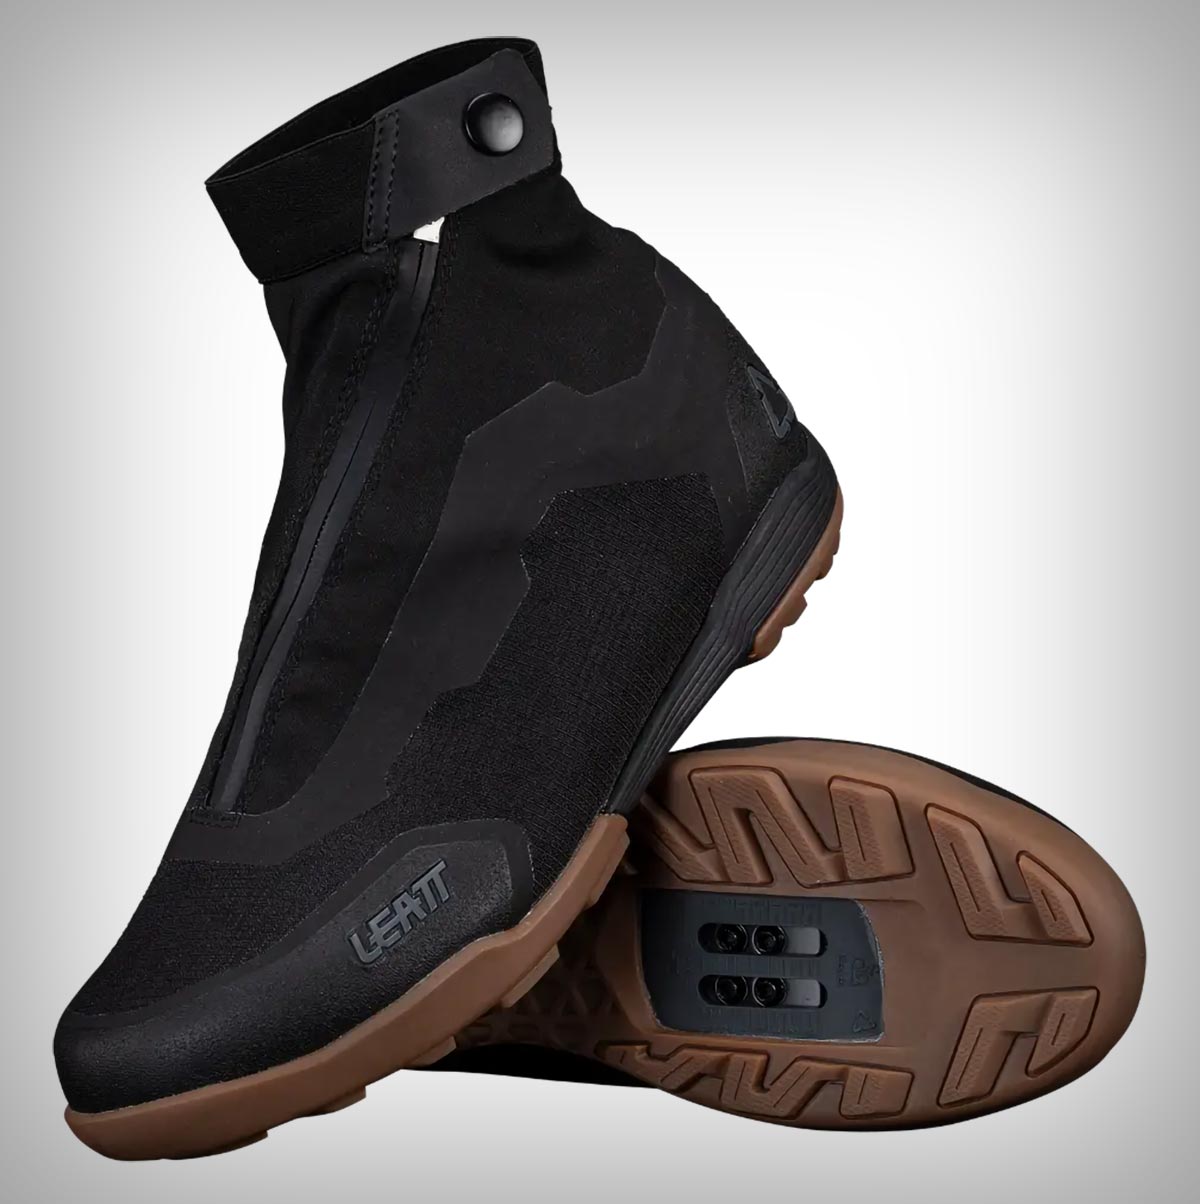 Leatt presenta las HydraDri 7.0 Clip, las zapatillas de MTB definitivas para los inviernos más fríos y lluviosos